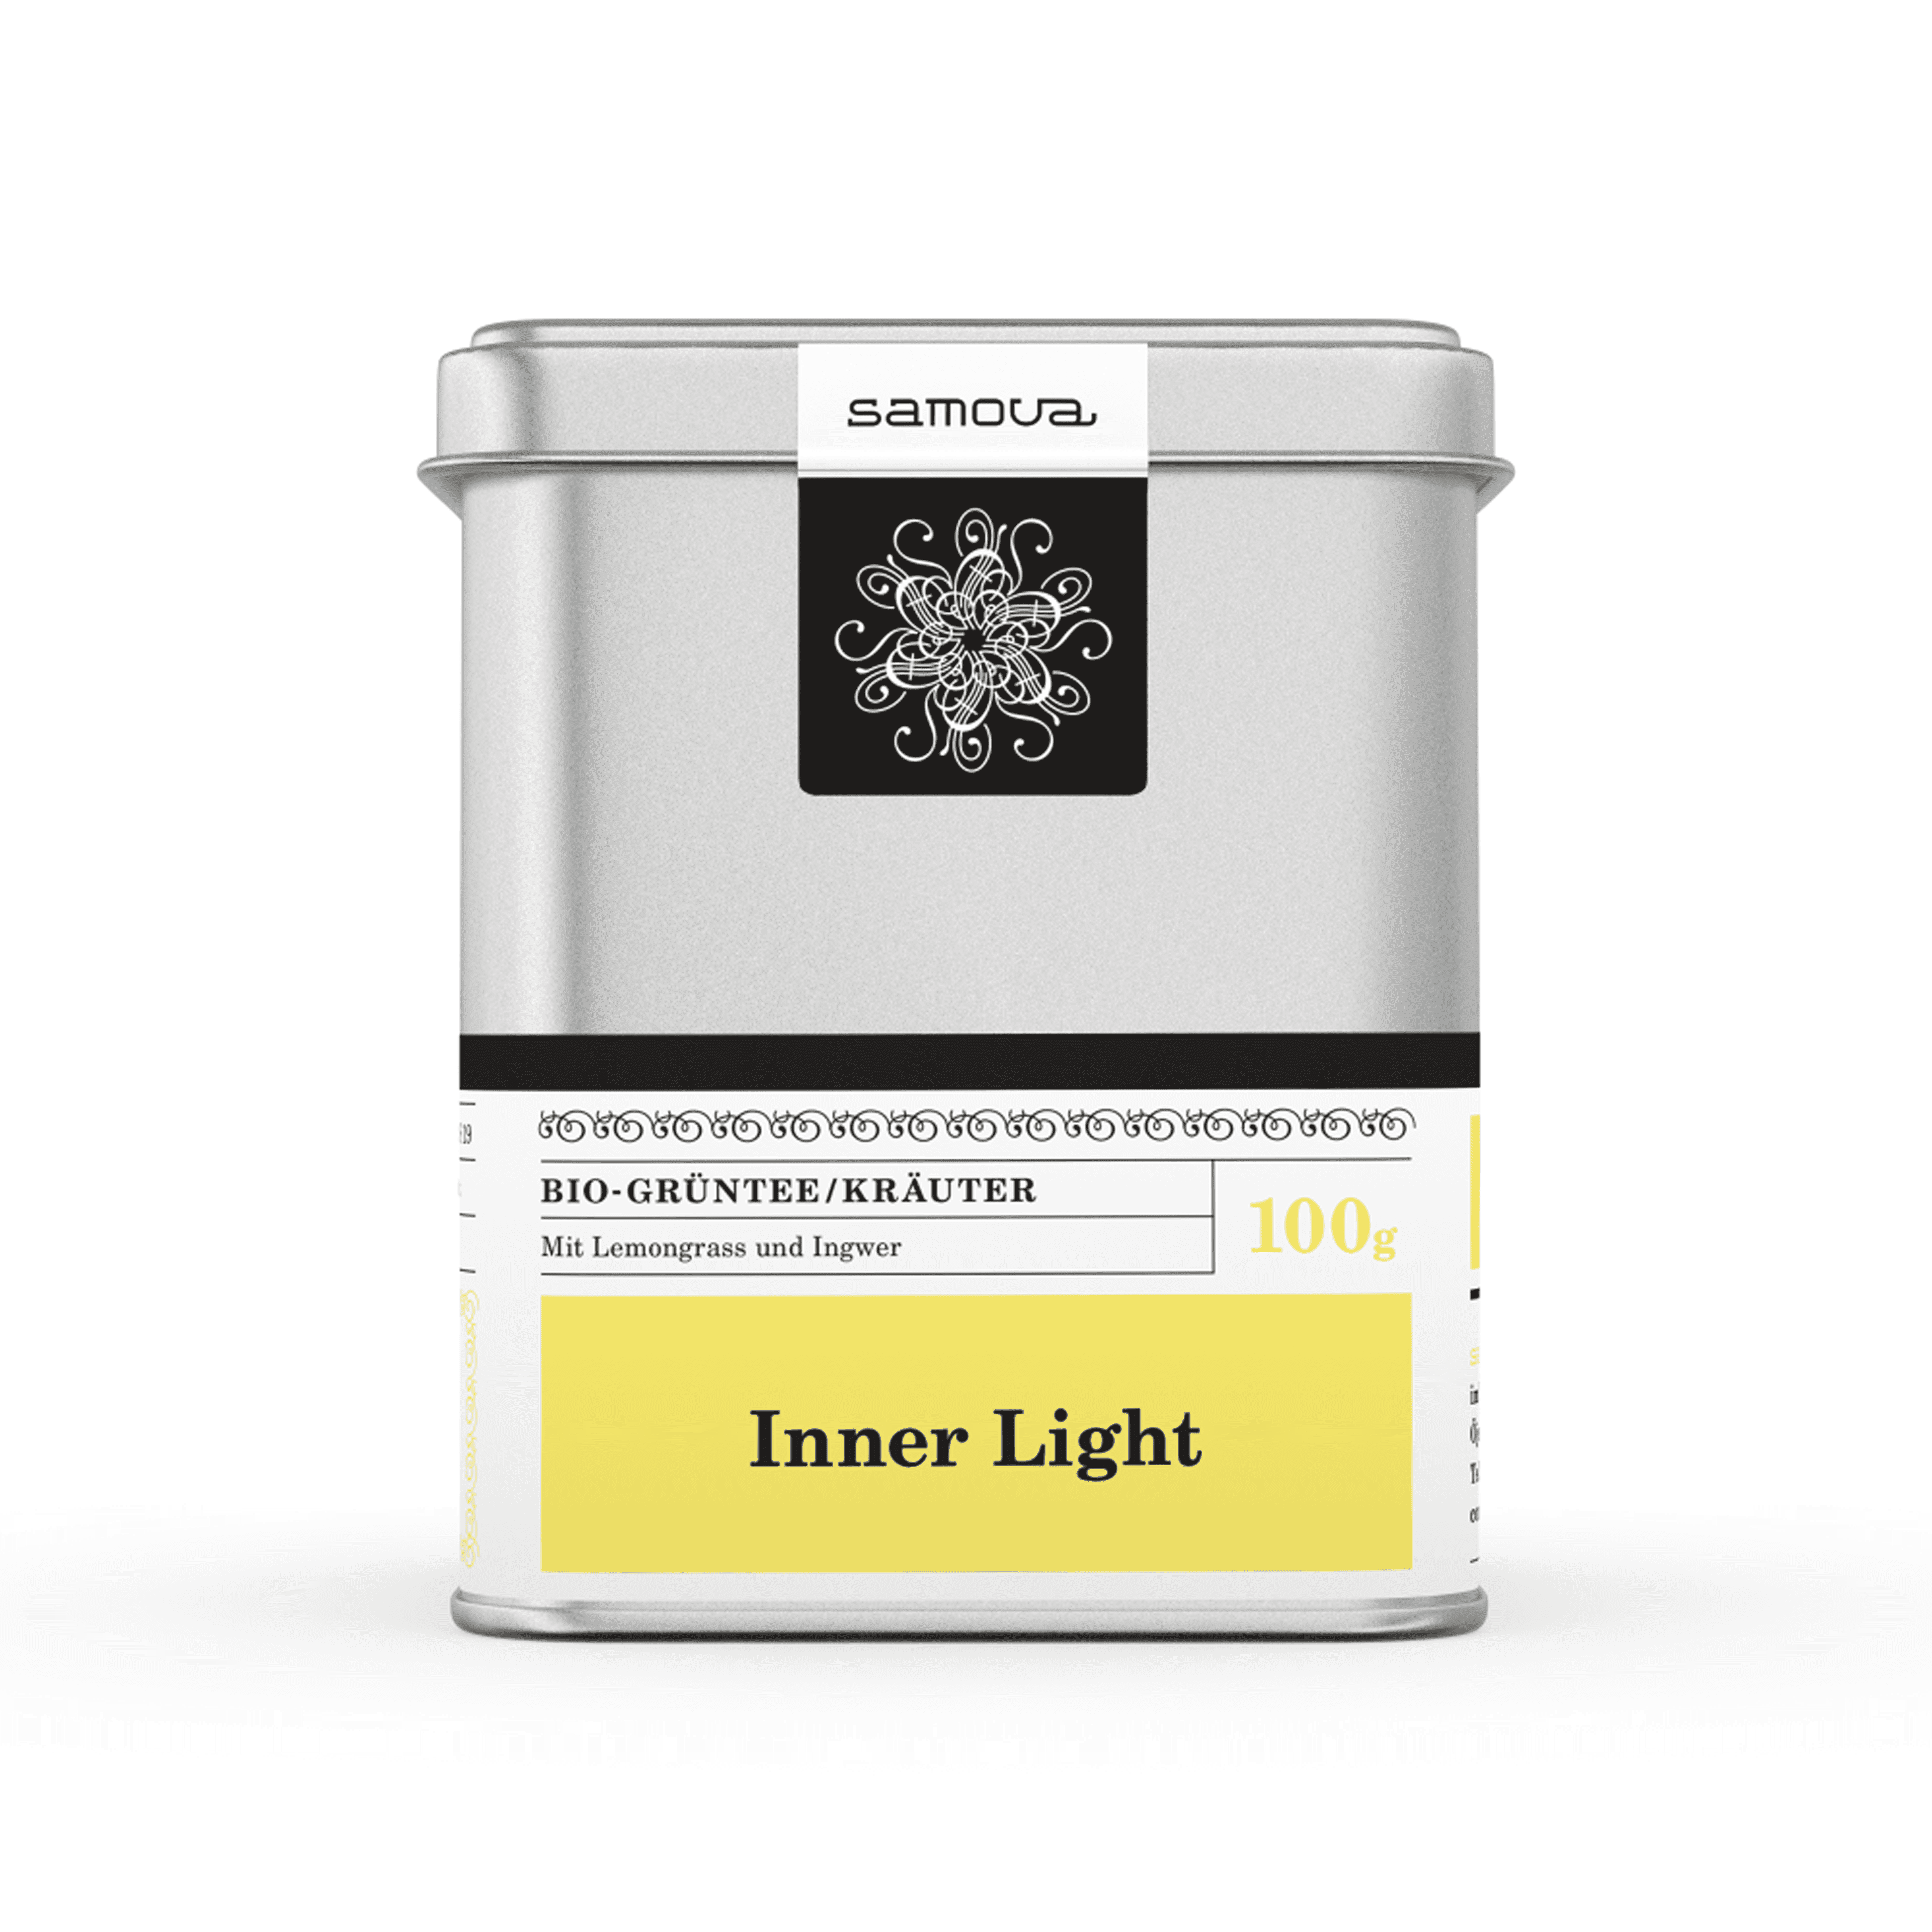 Lata de té de Inner Light